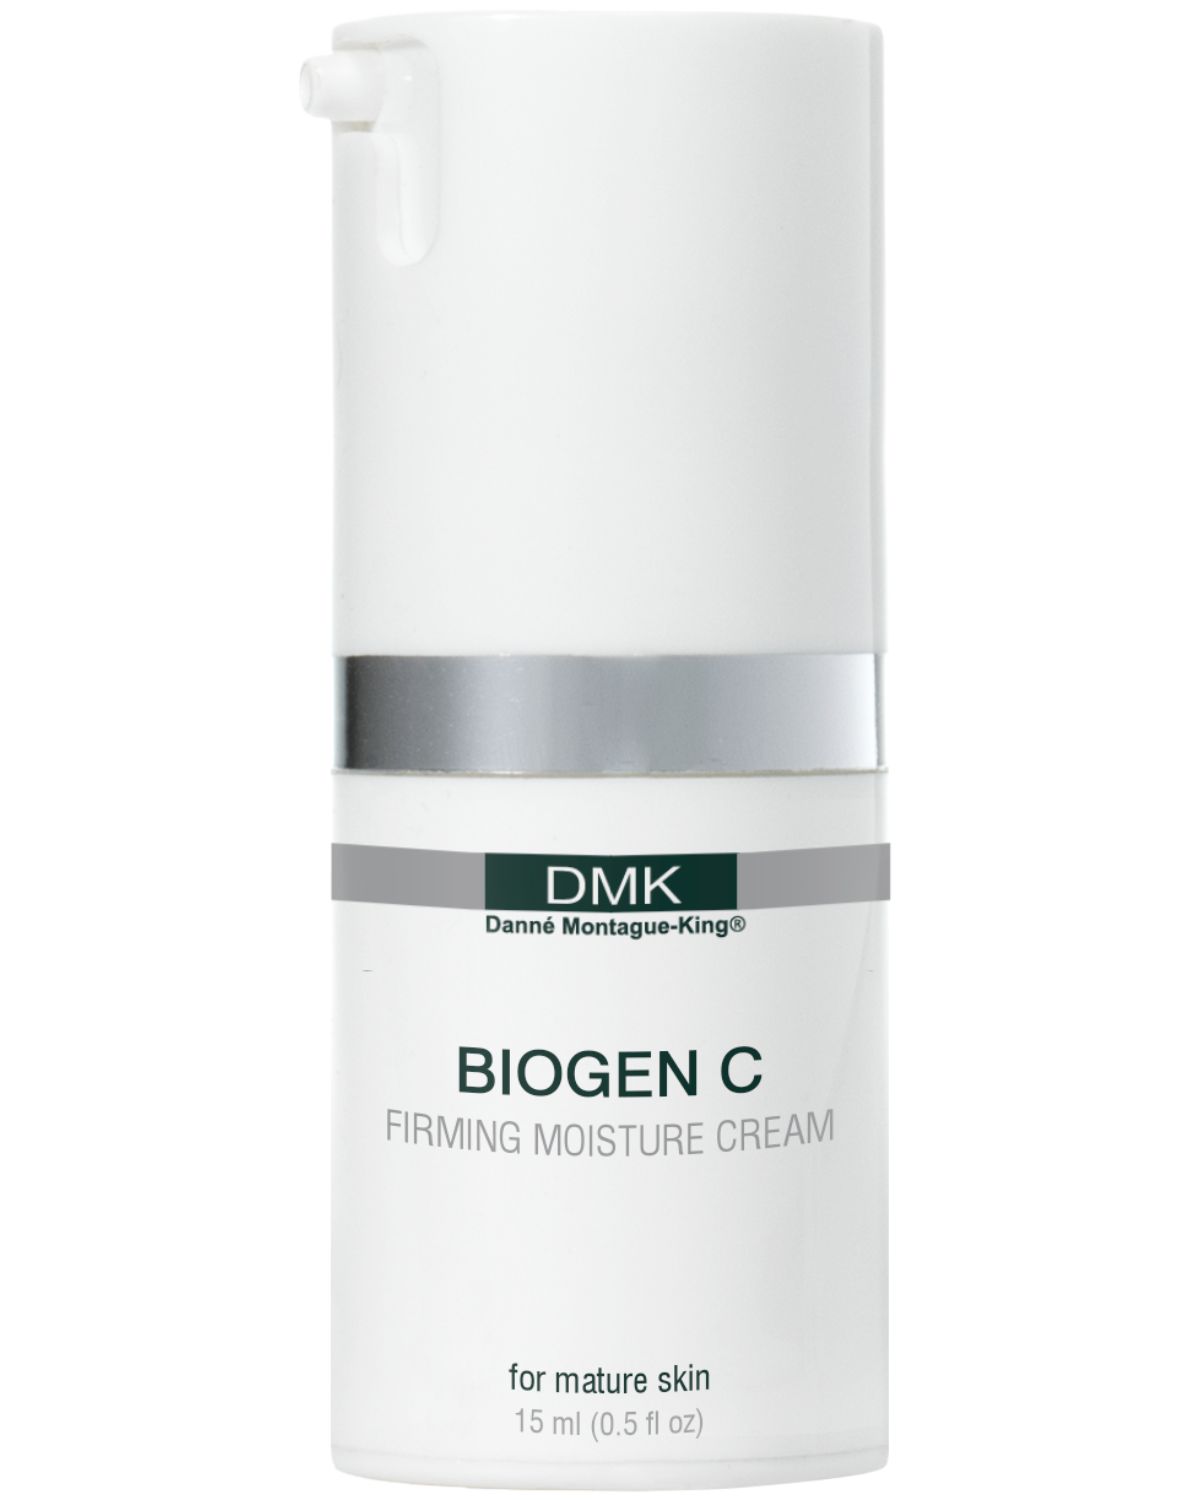 Biogen C